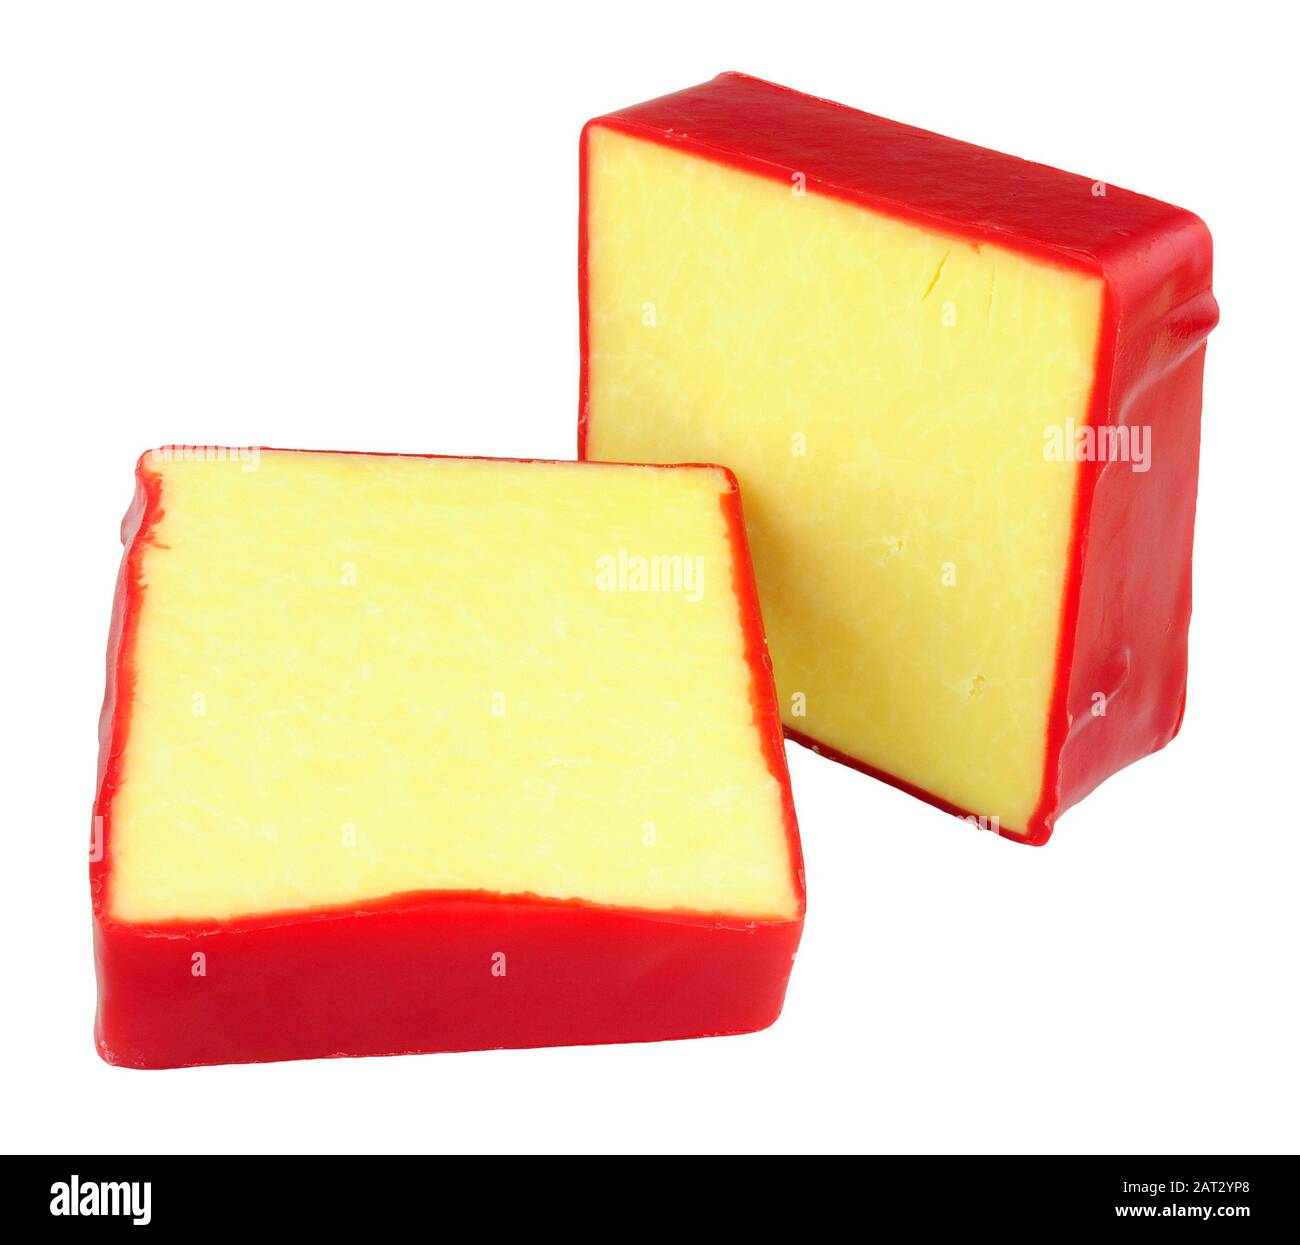 Monterey Jack Käsevierecke mit roter Wachsbeschichtung isoliert auf weißem Grund Stockfoto